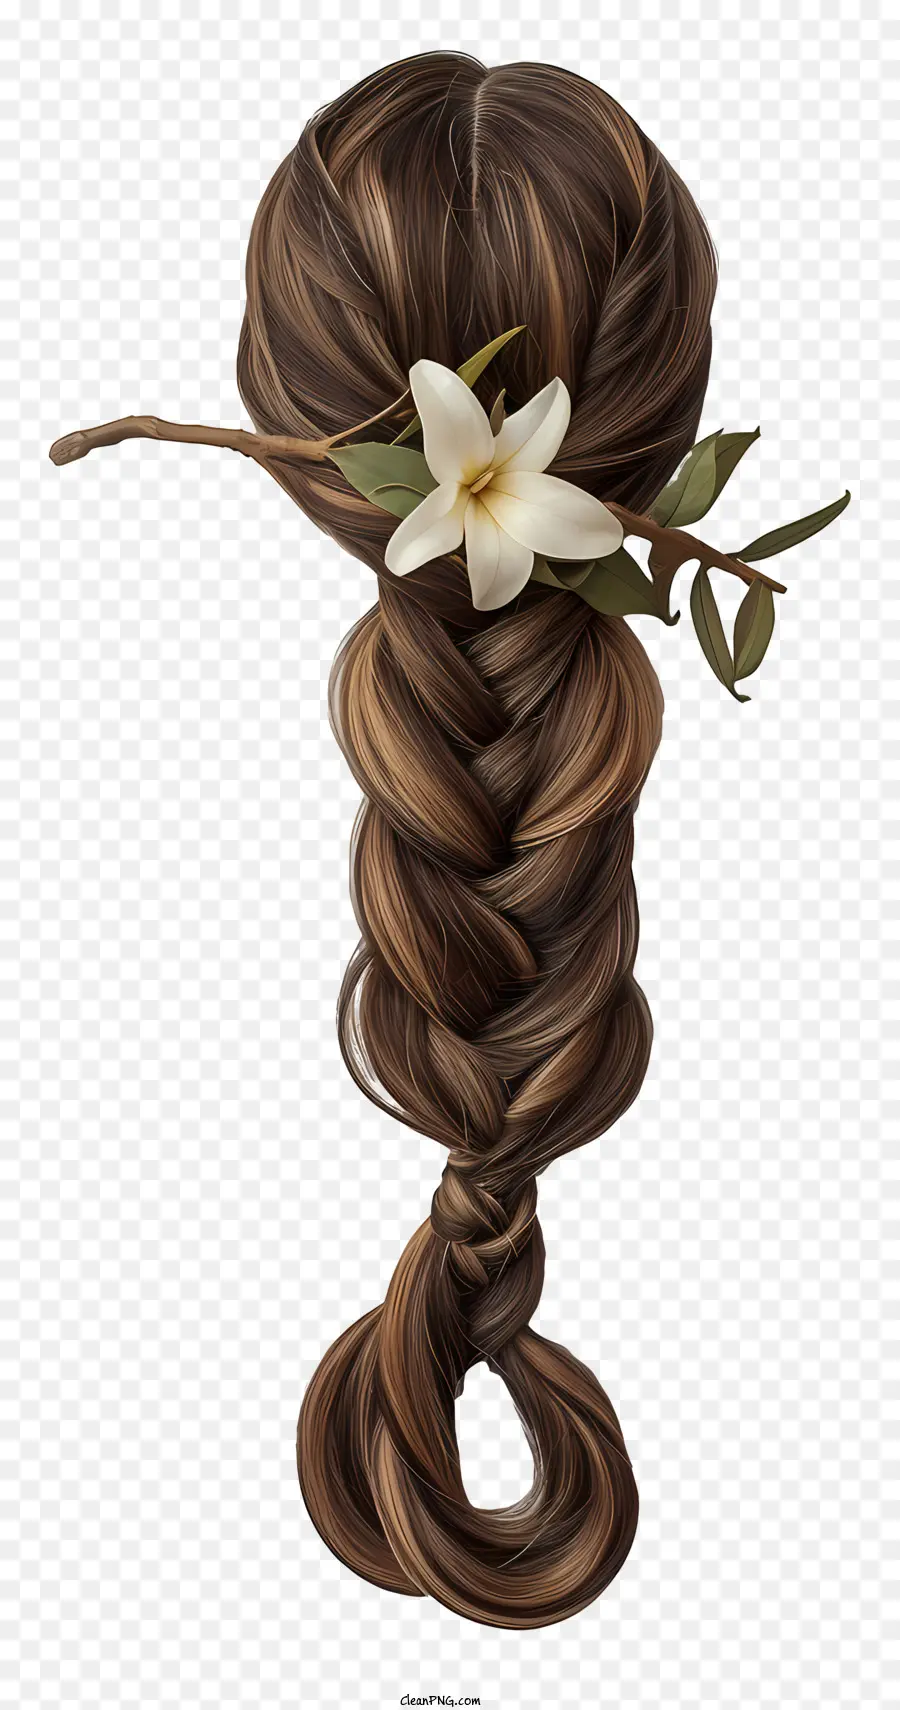 Capelli intrecciati parrucca capelli castani capelli castani acconciatura intrecciata fiori bianchi negli accessori per capelli - Immagine: donna con lunghi capelli intrecciati marroni, adornati con fiori